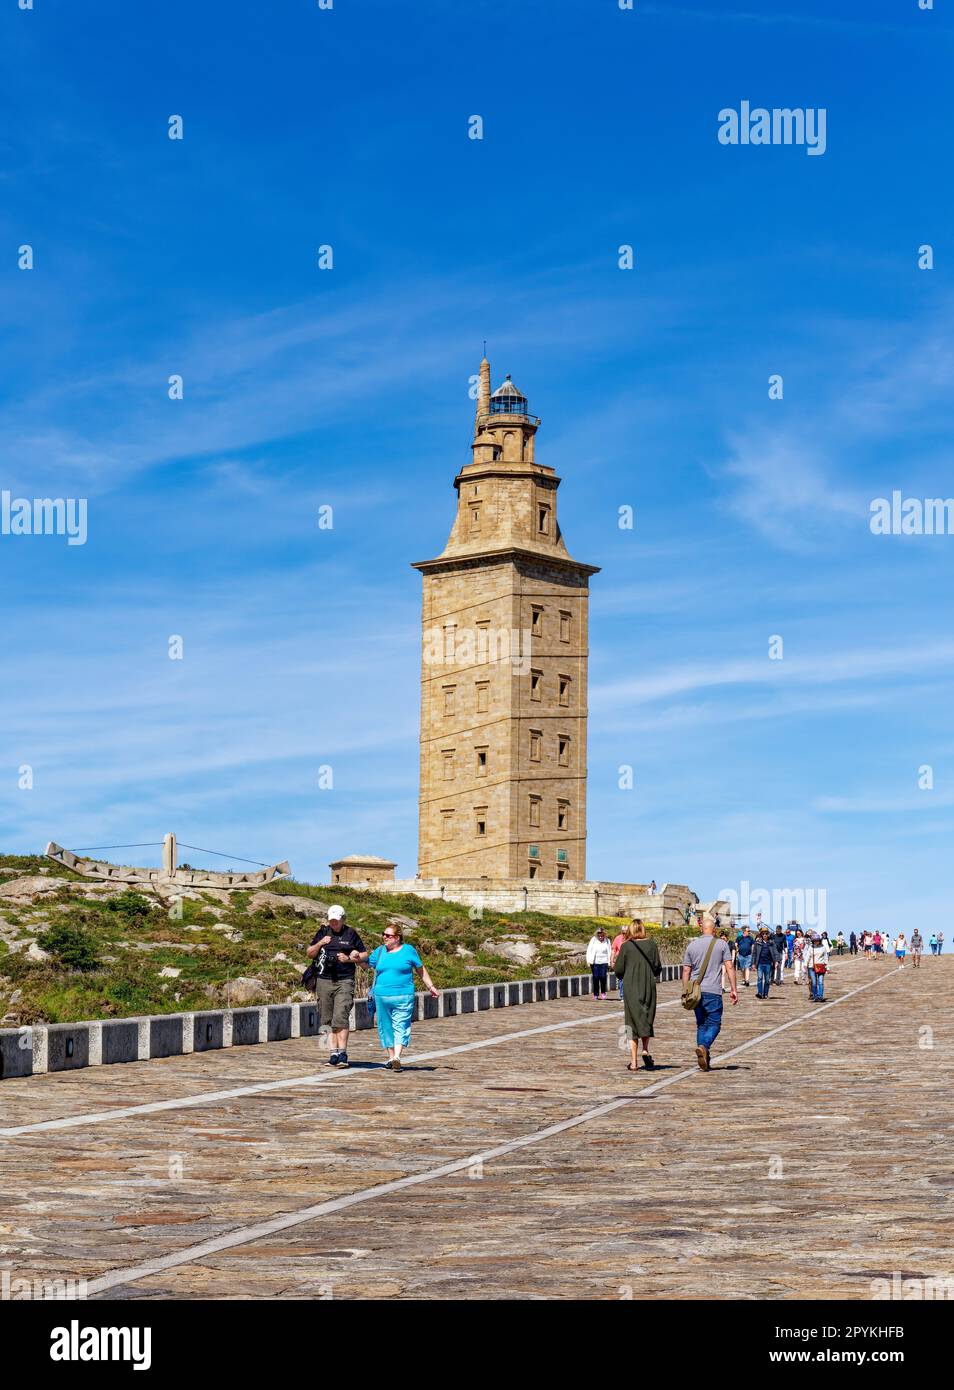 Der Turm des Herkules in La Coruna, Spanien (Torre de Hércules), ist der älteste Leuchtturm der Welt Stockfoto